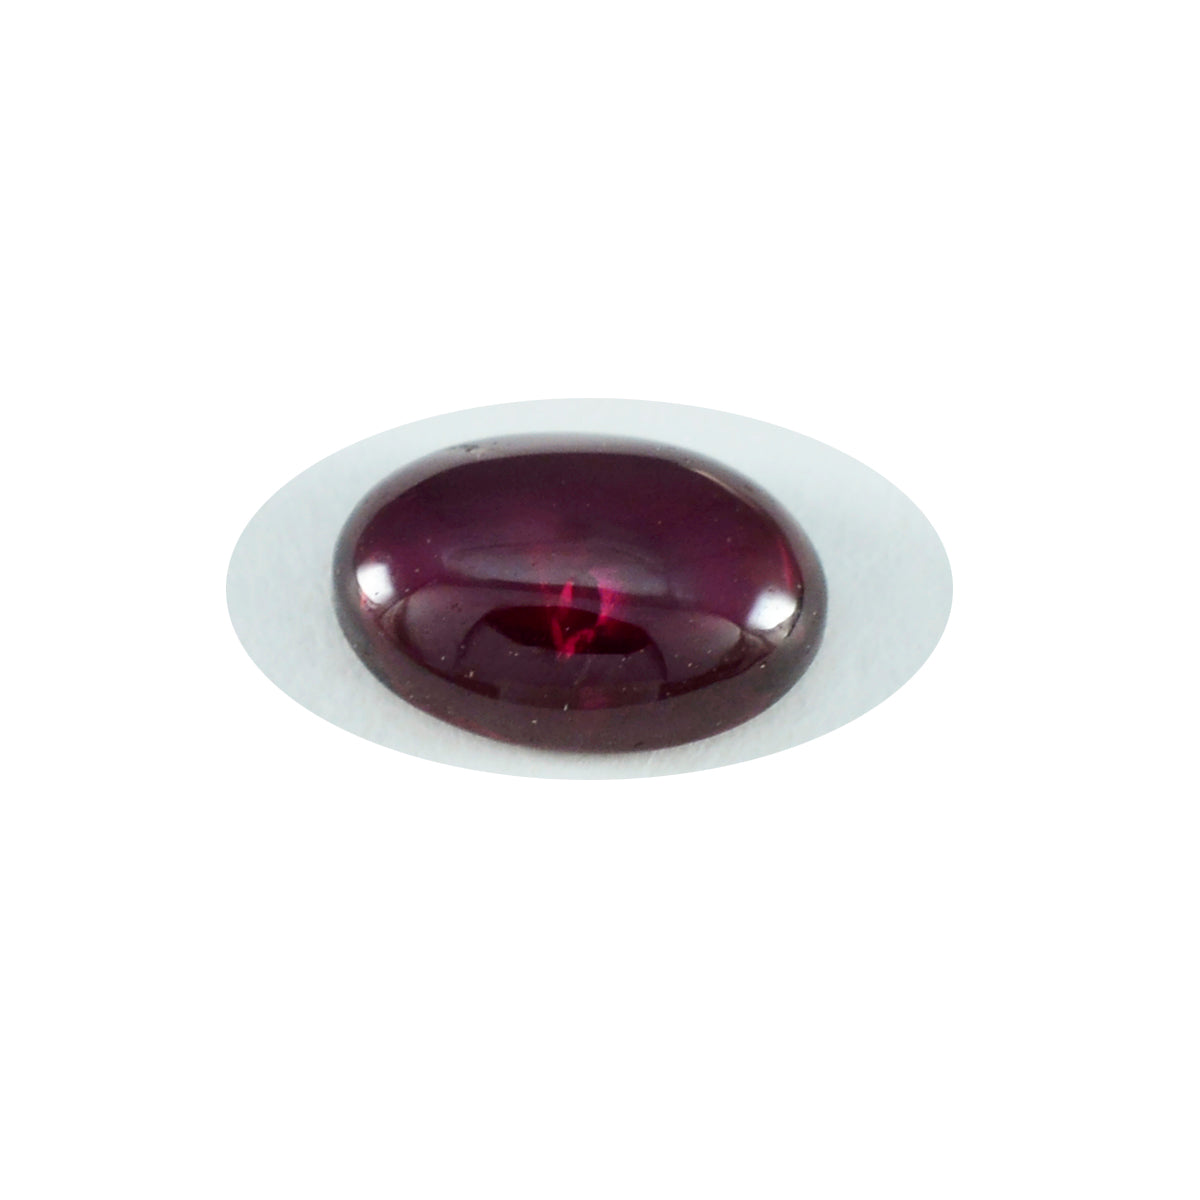 Riyogems 1 Stück roter Granat-Cabochon, 9 x 11 mm, ovale Form, Edelsteine von ausgezeichneter Qualität